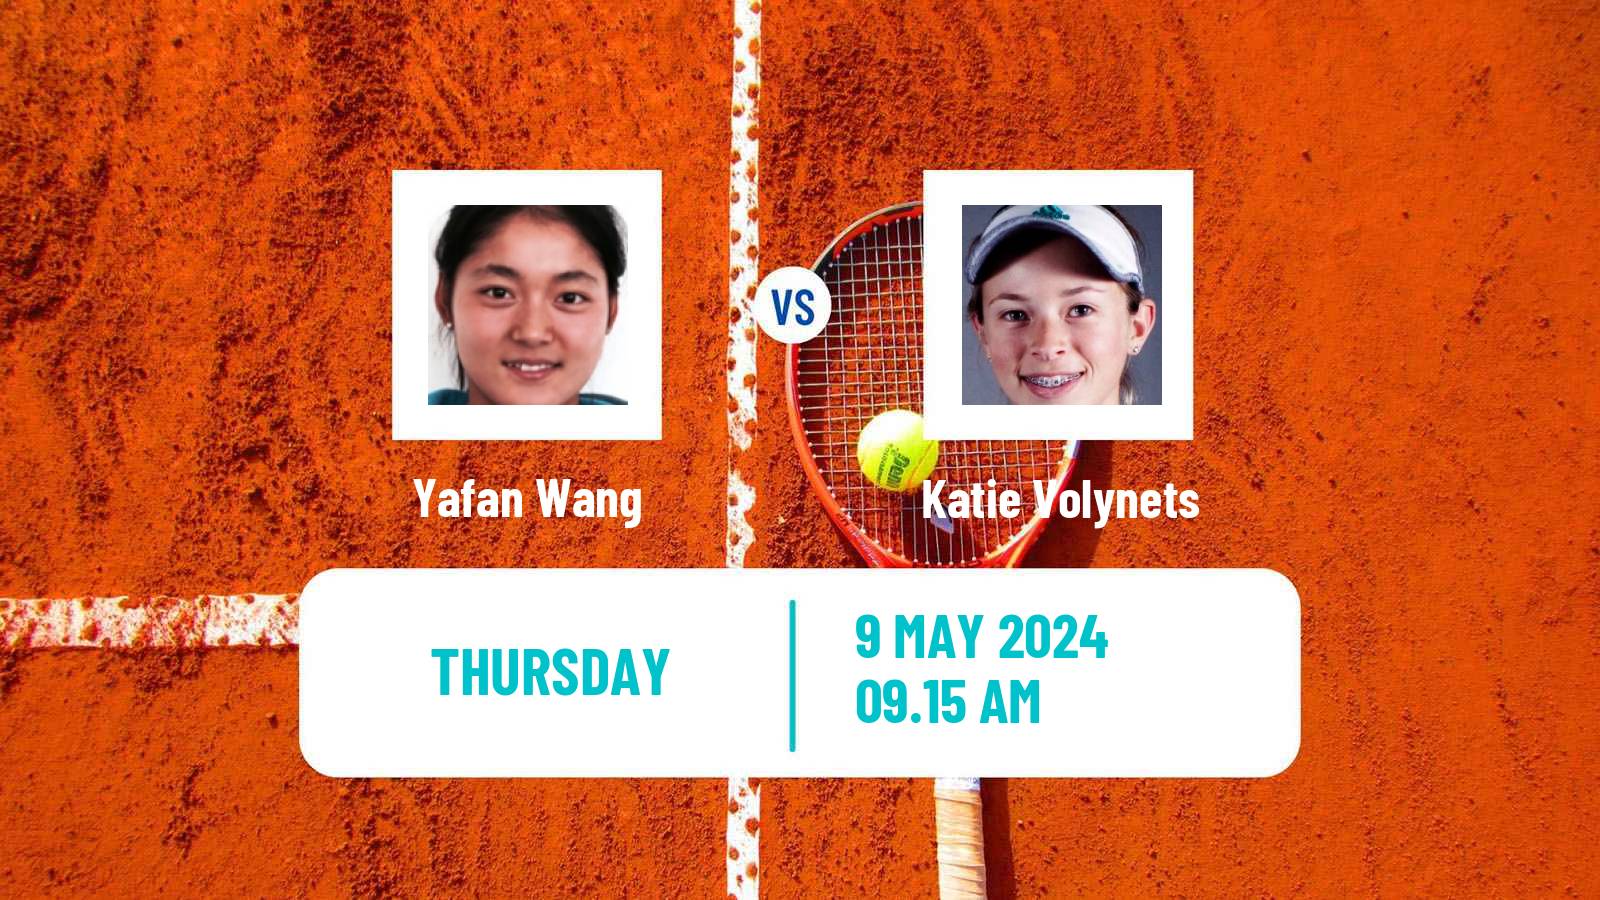 Tennis WTA Roma Yafan Wang - Katie Volynets